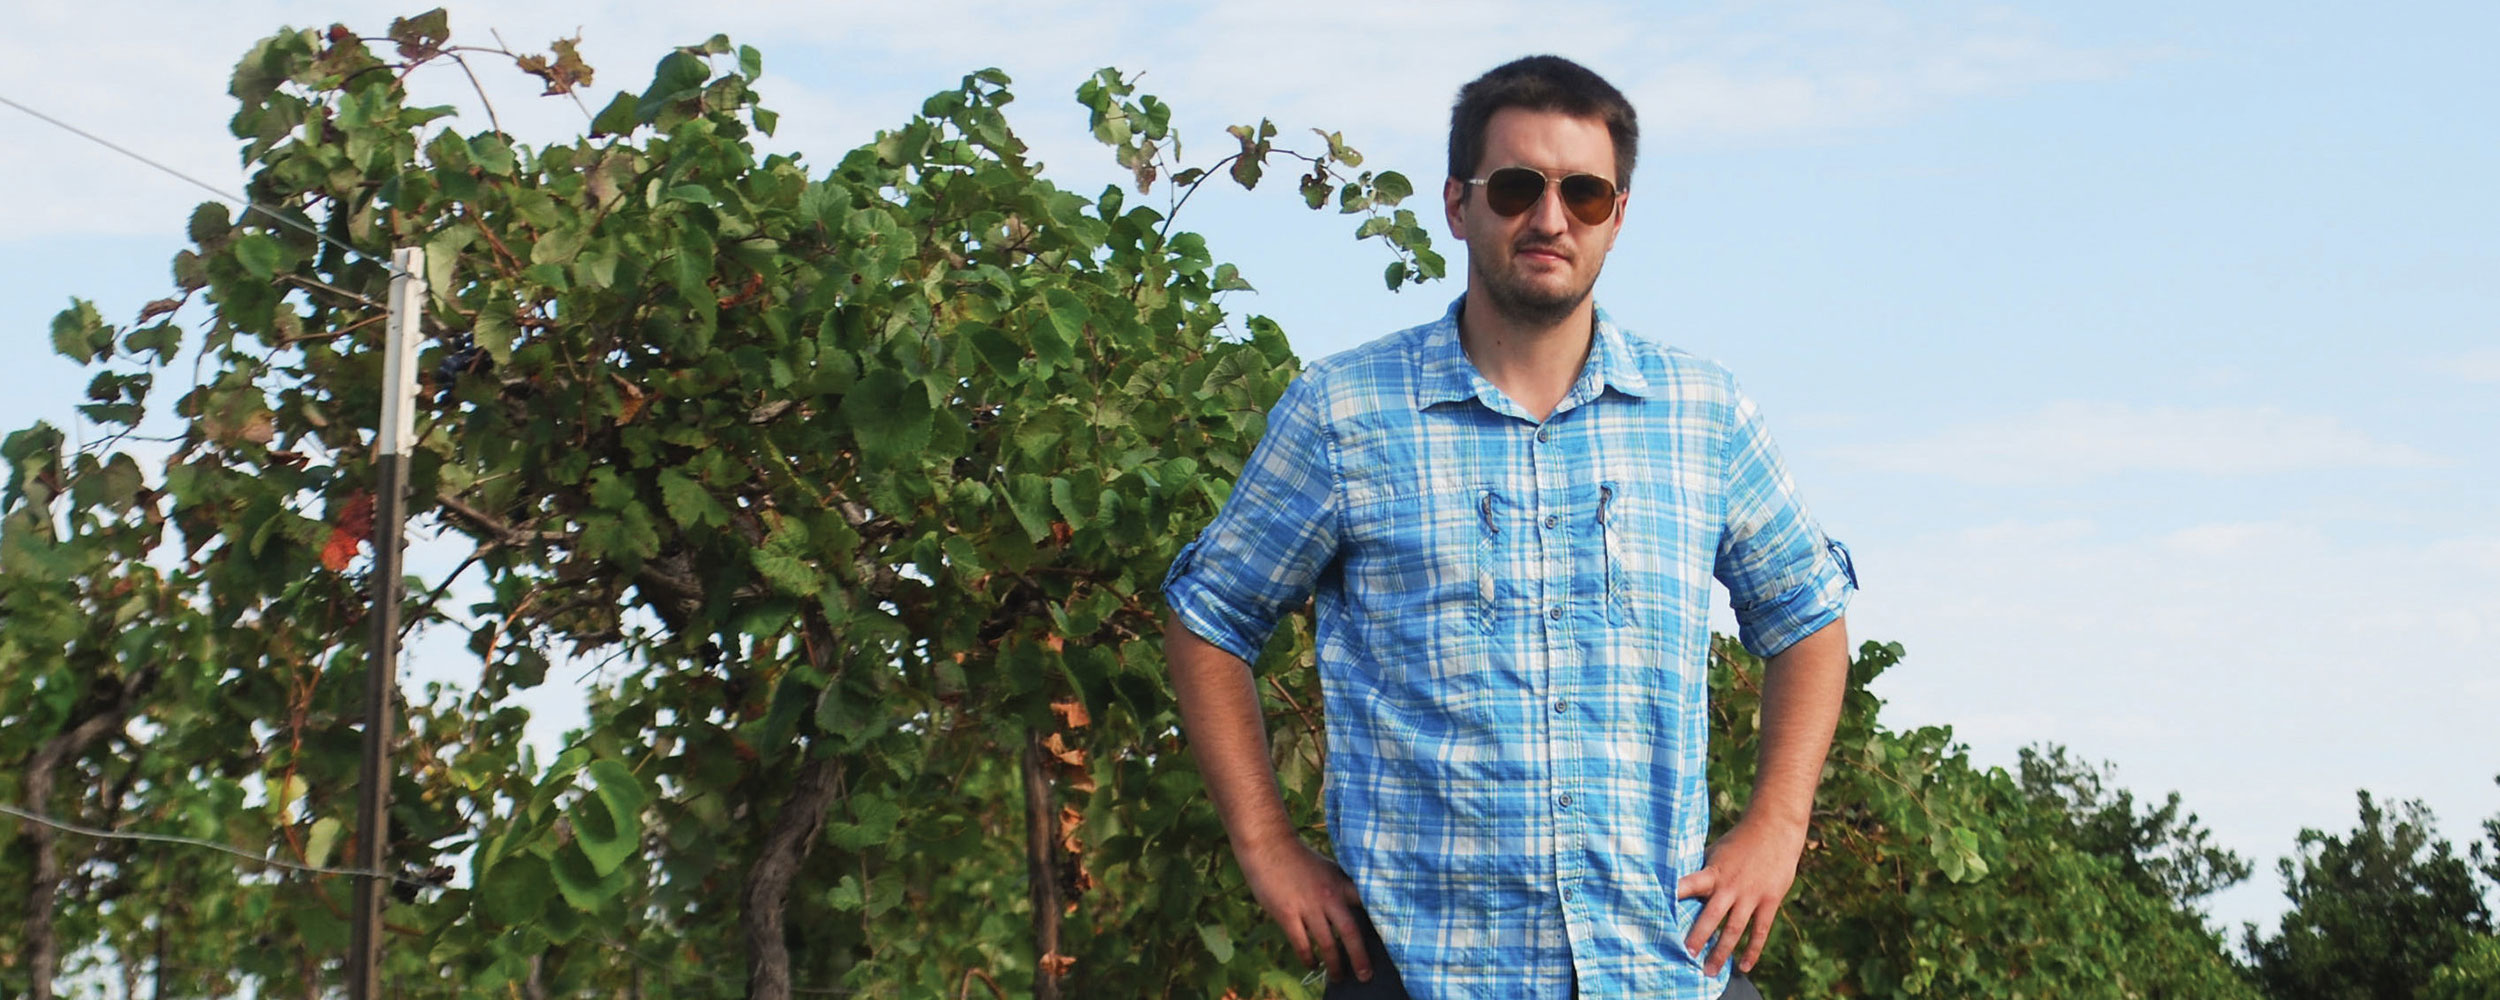 Andrej Svyantek stands among vines